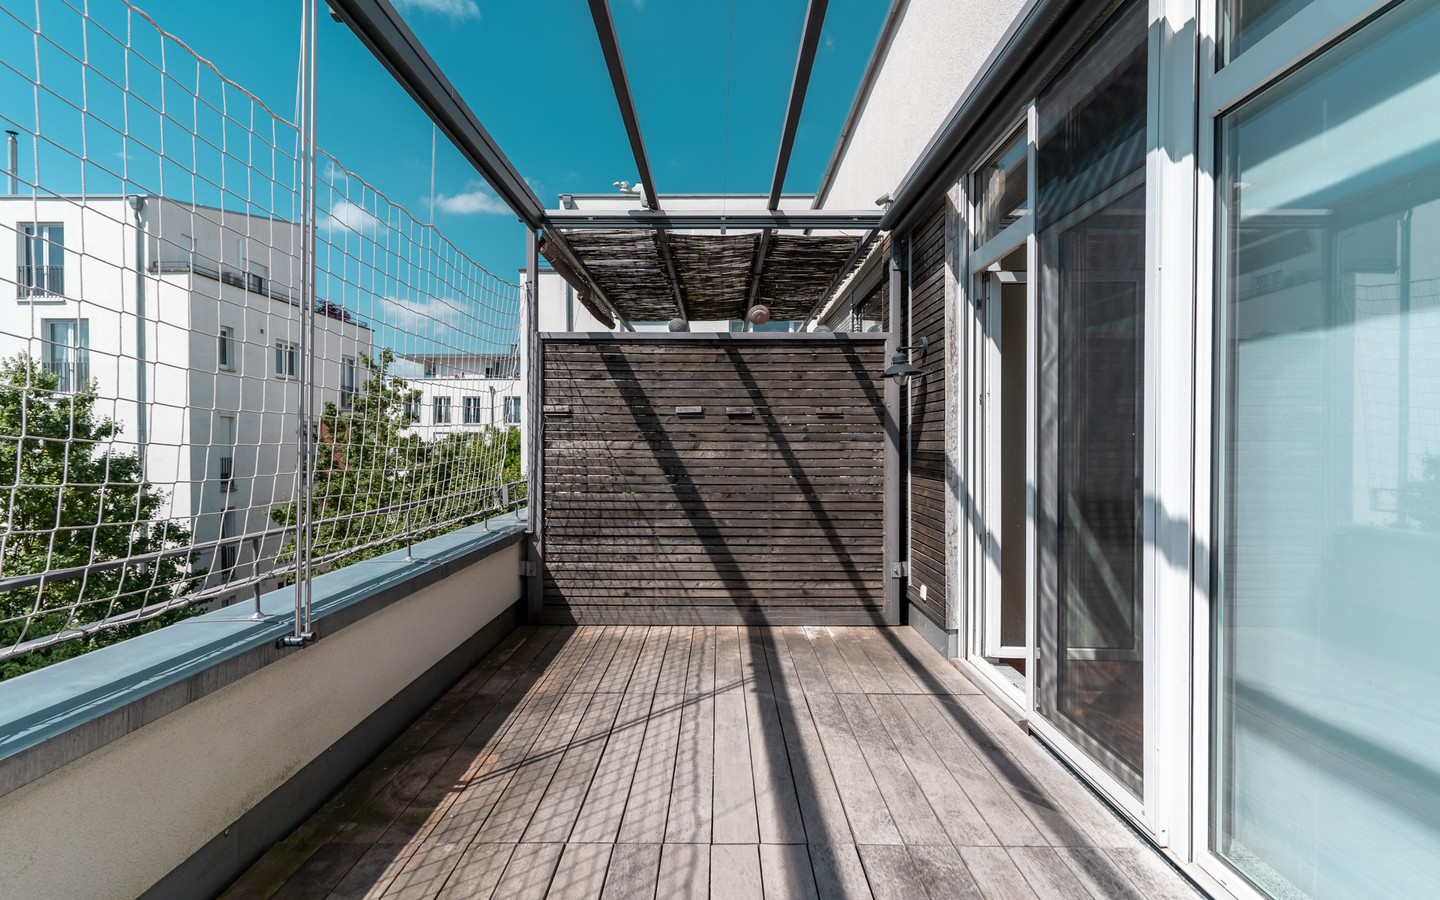 Dachterrasse - Grün, urban und freundlich: Bezugsfreies Reihenhaus mit Garten und Dachterrasse im Quartier am Turm